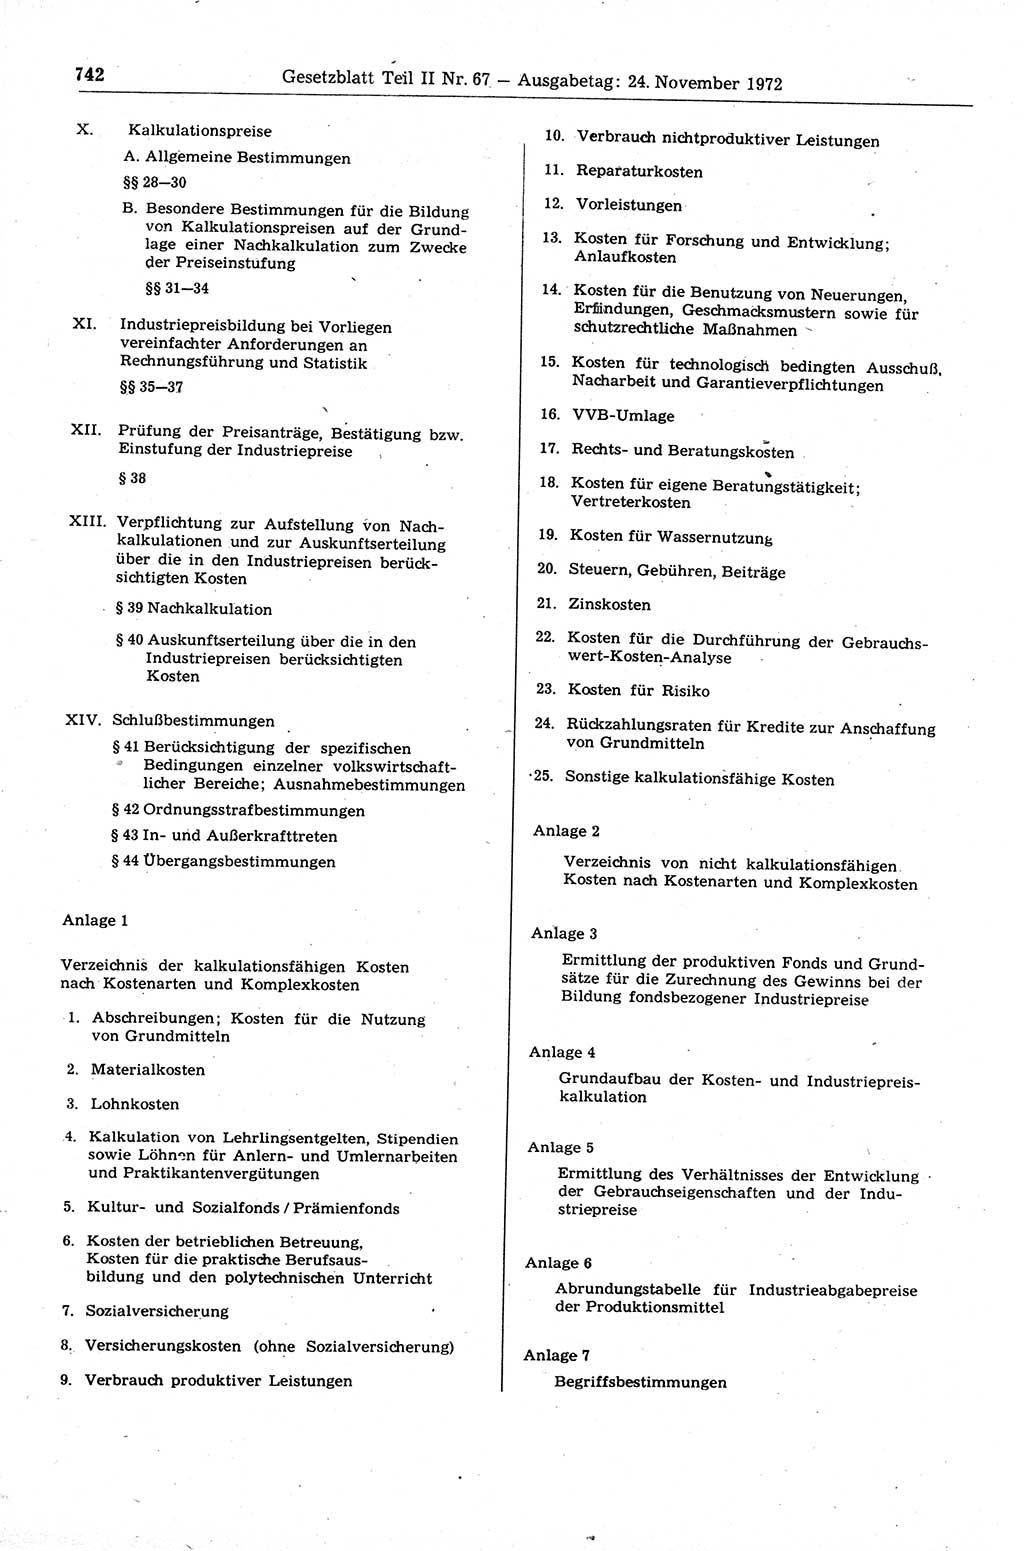 Gesetzblatt (GBl.) der Deutschen Demokratischen Republik (DDR) Teil ⅠⅠ 1972, Seite 742 (GBl. DDR ⅠⅠ 1972, S. 742)